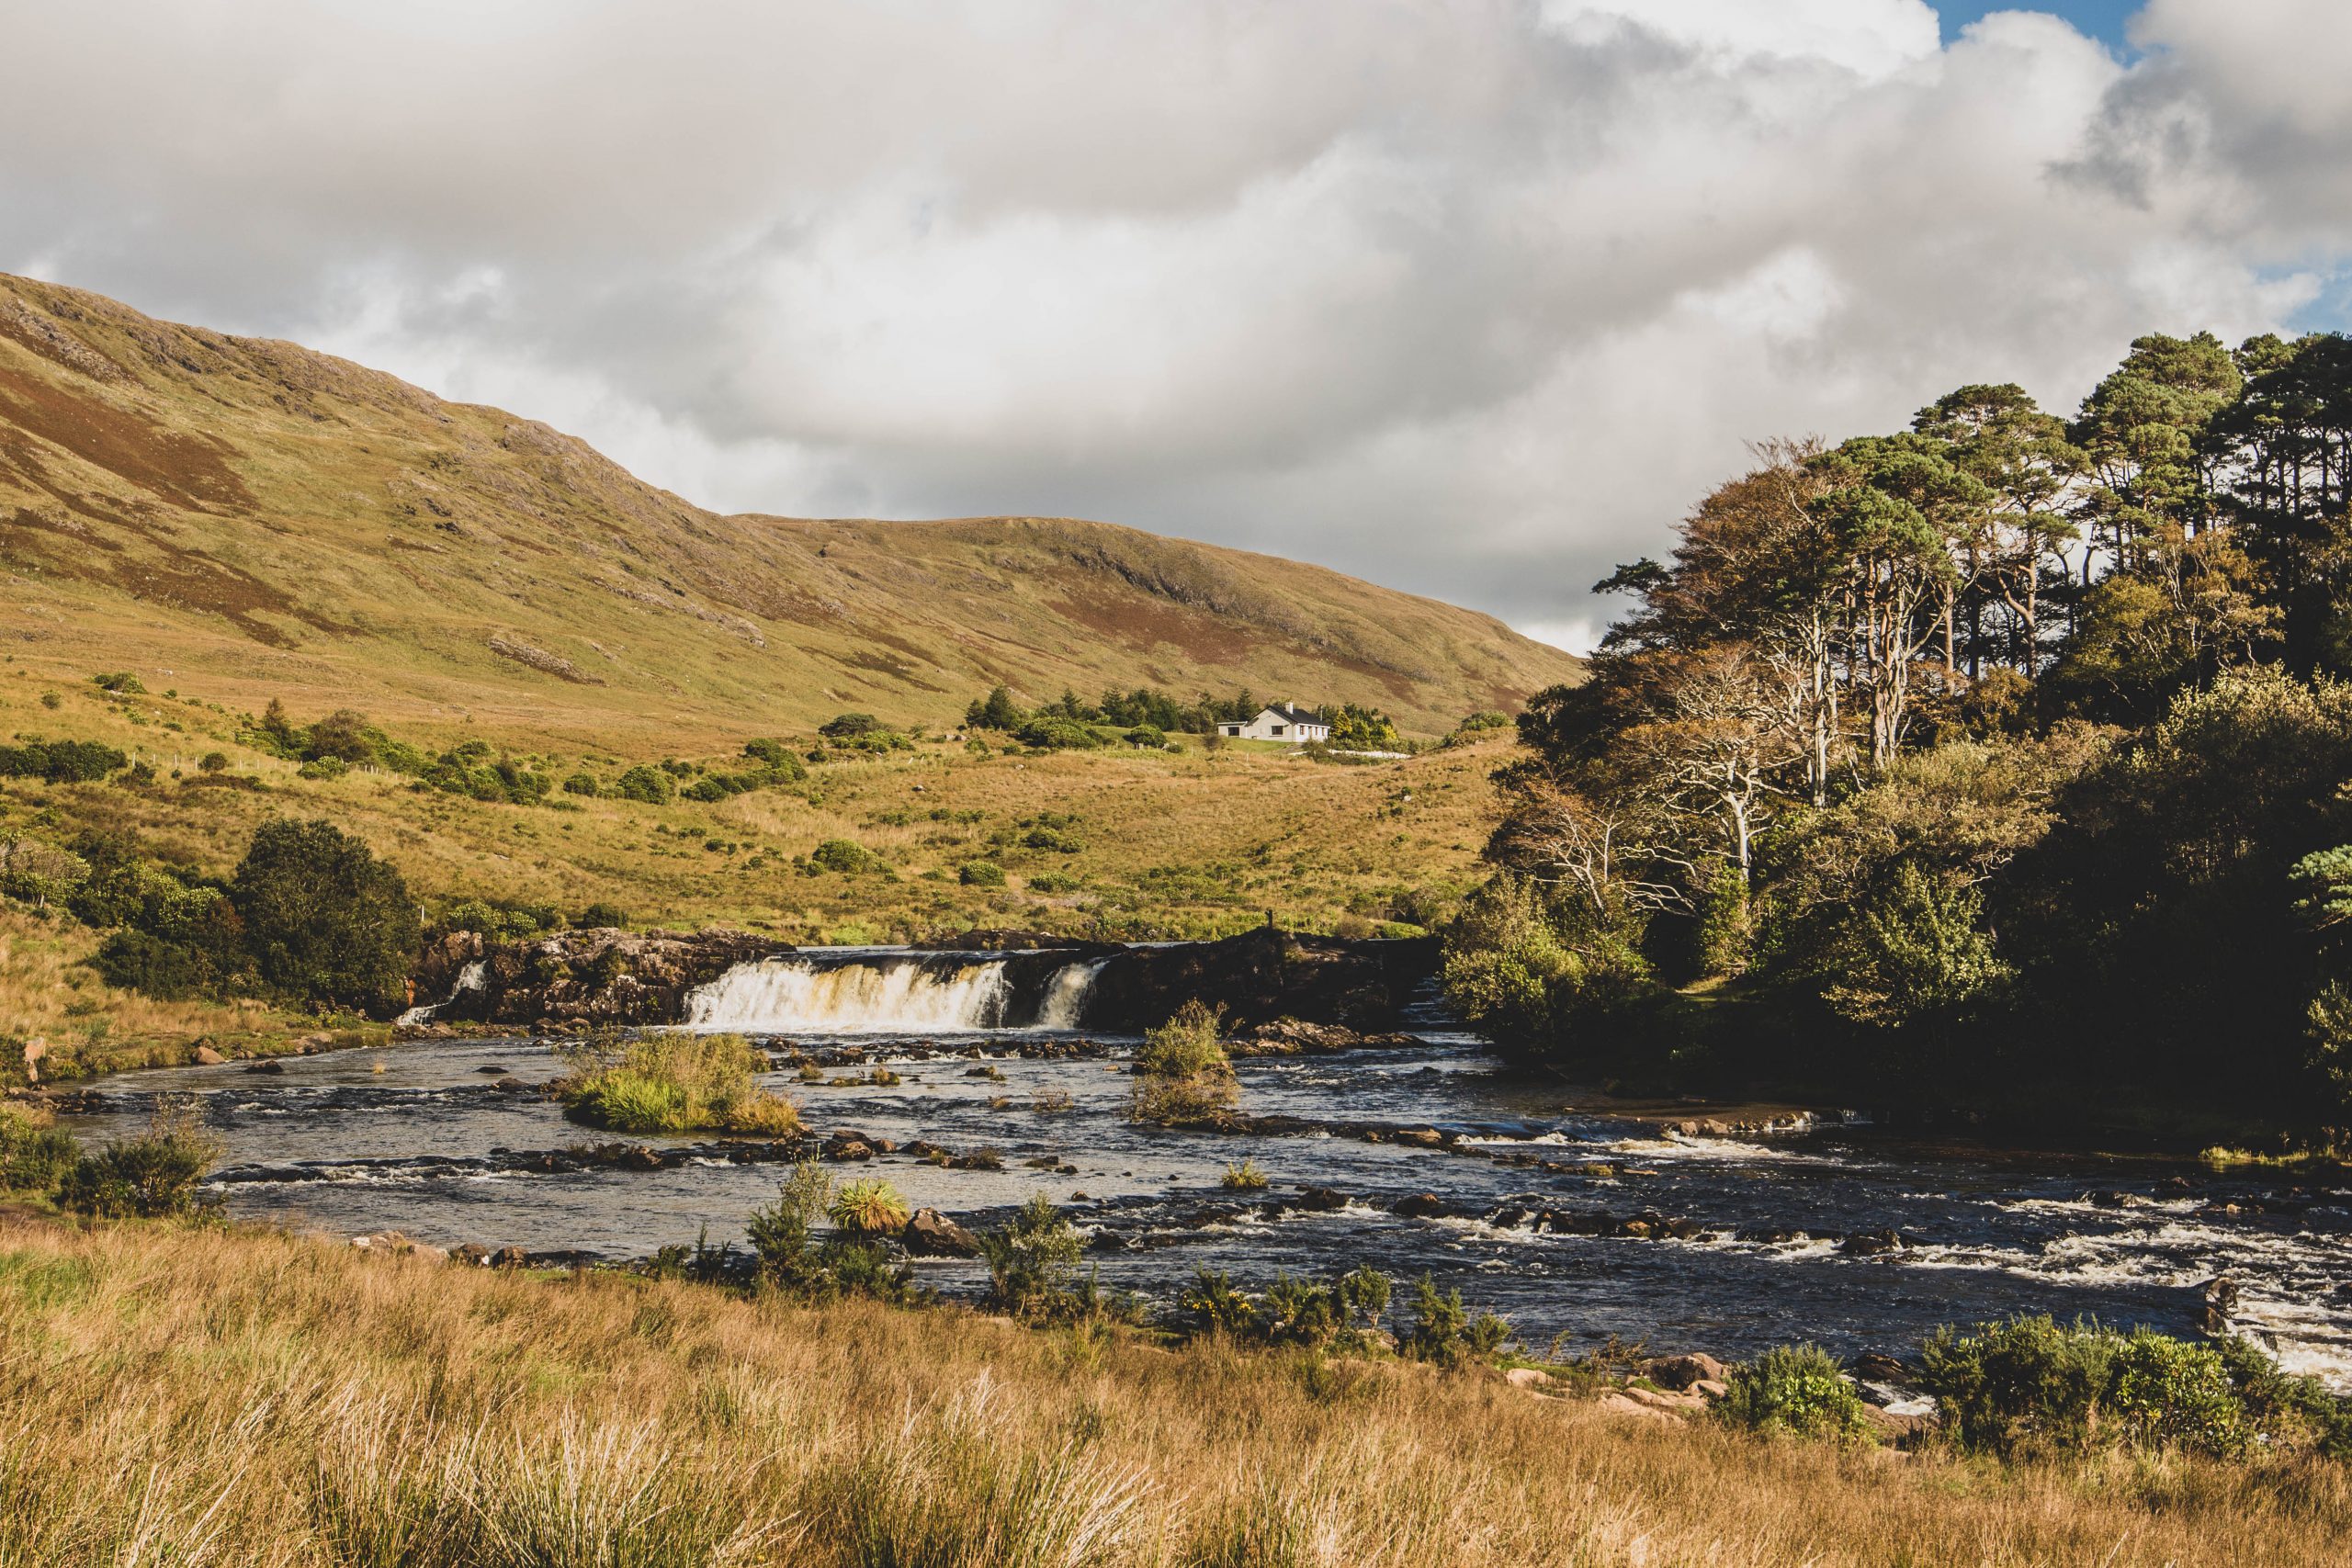 Une visite du Connemara, entre nature sauvage et coutumes gaéliques